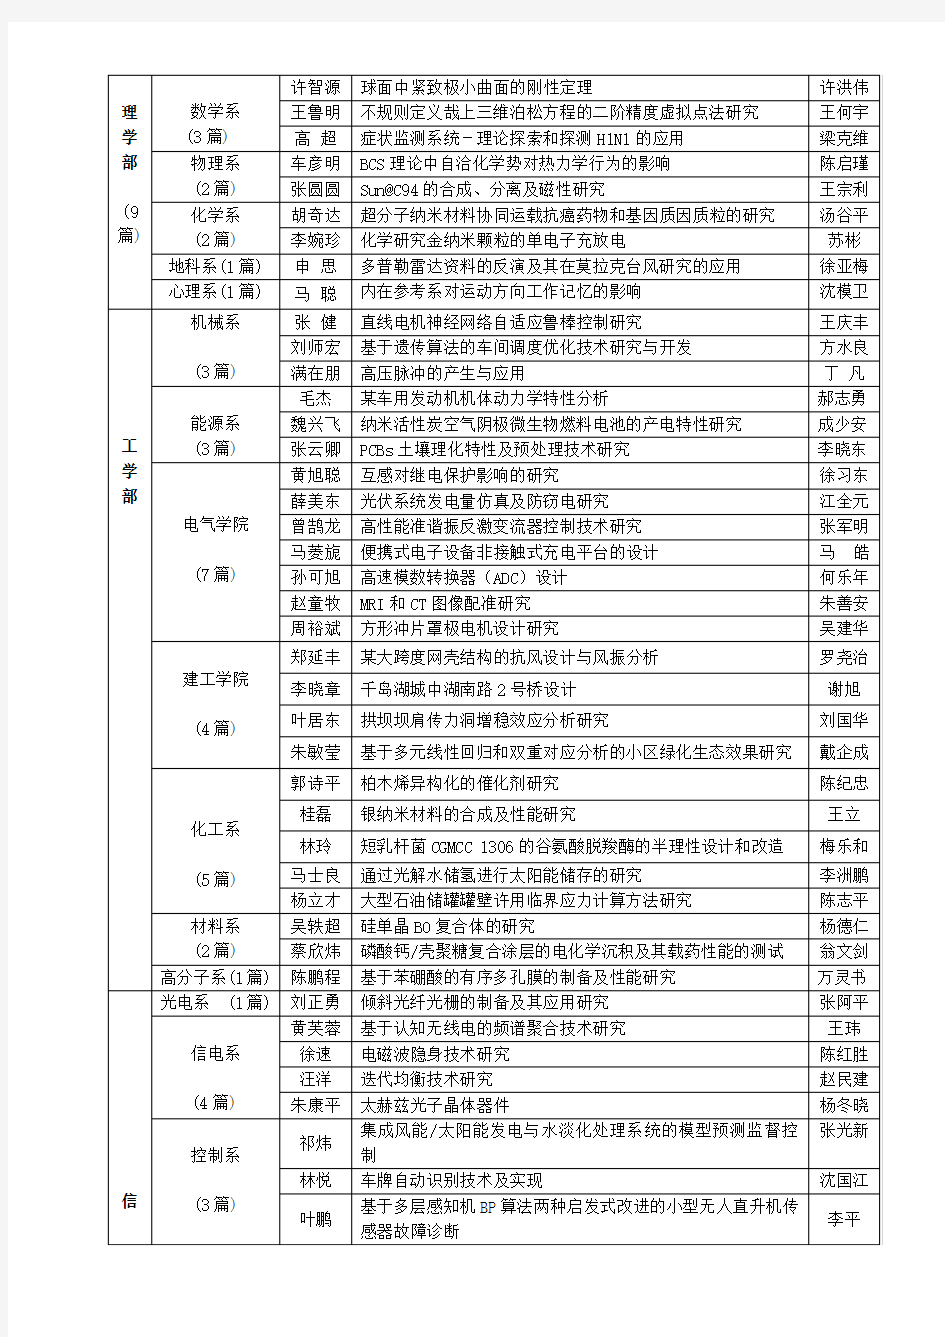 浙江大学2010届百篇特优本科毕业设计(论文)公示名单